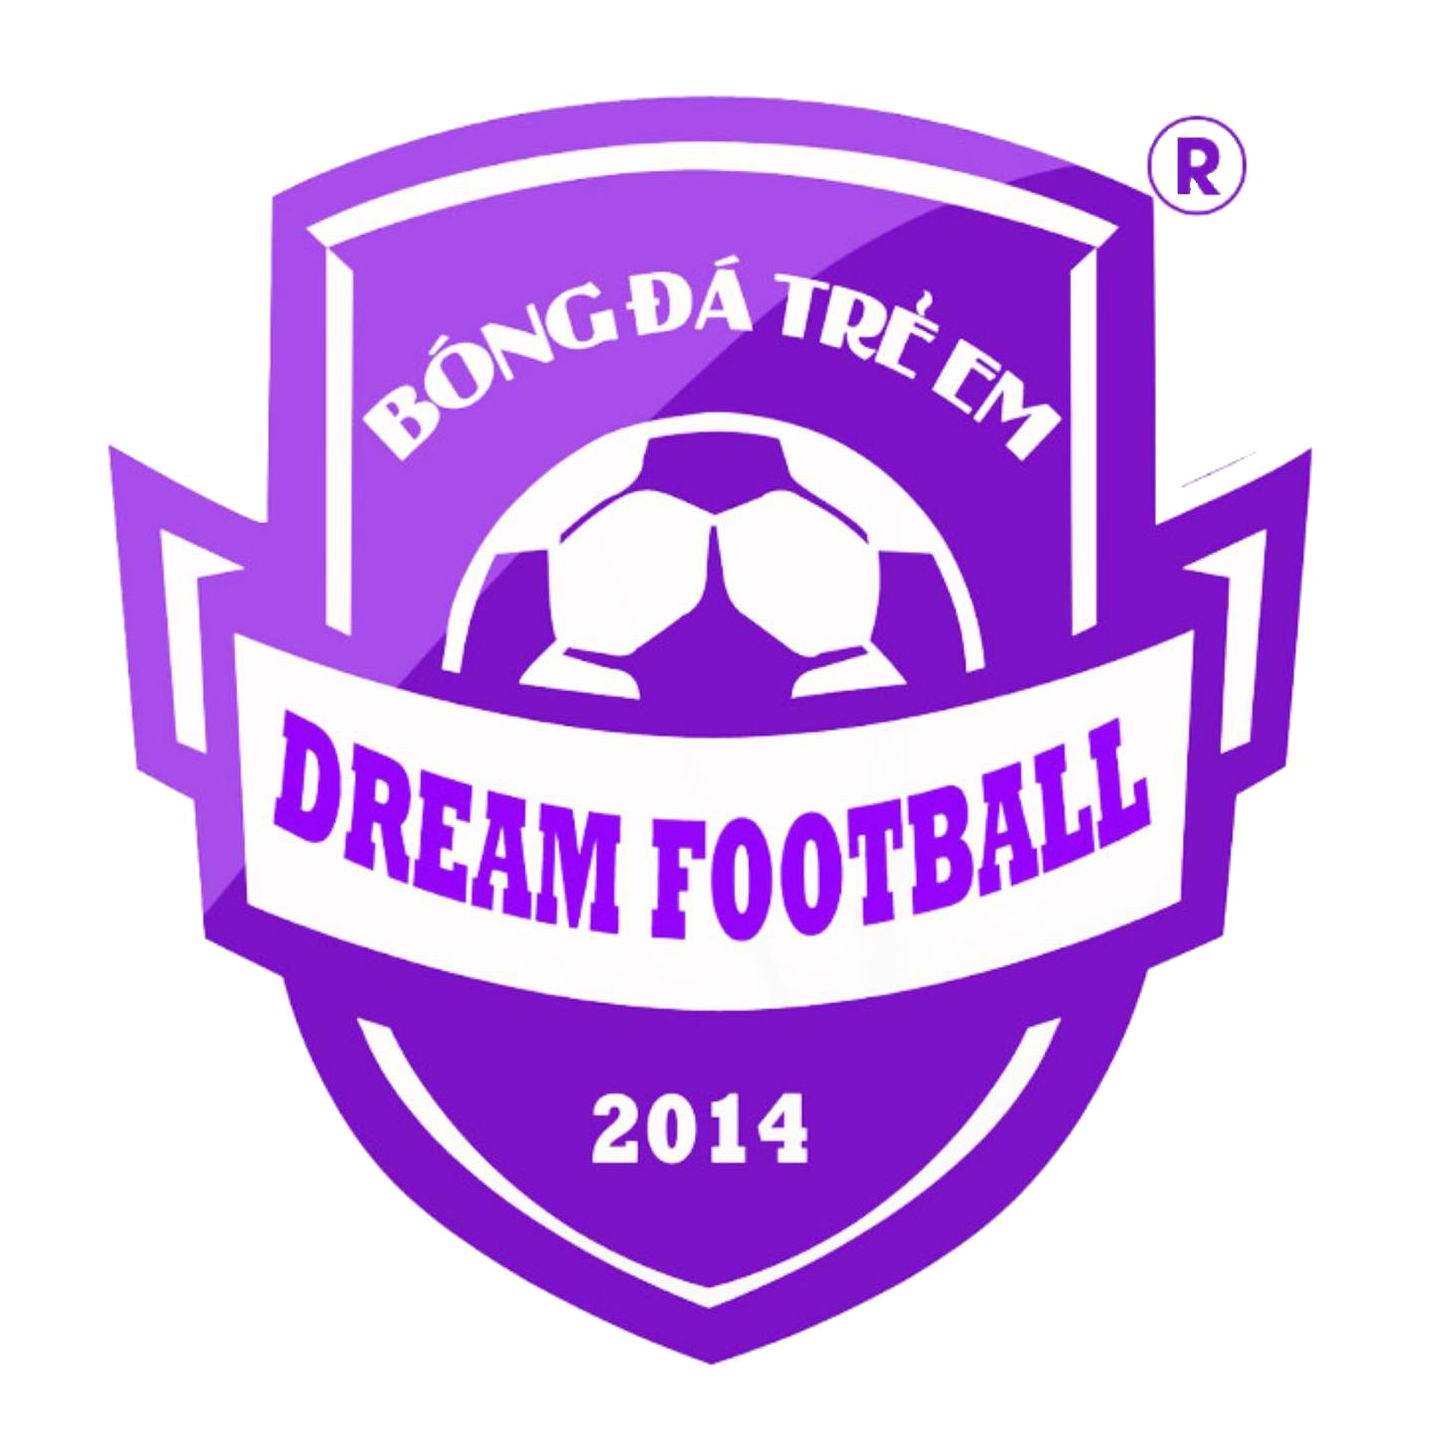 Bóng đá trẻ em Đà Nẵng – Dream Football